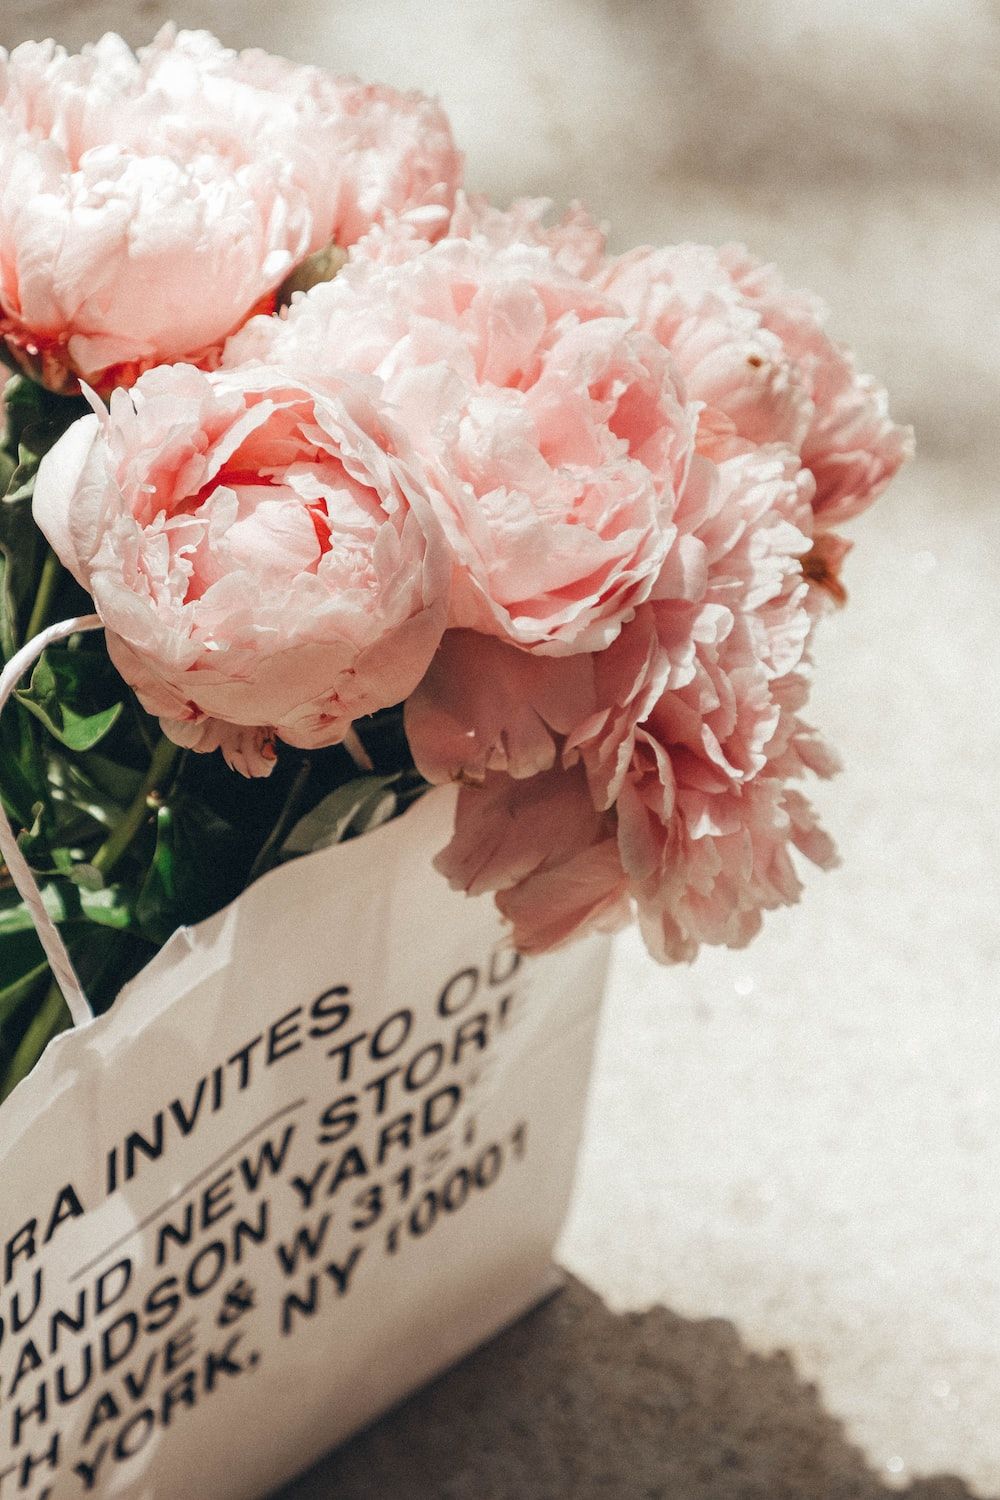  Pfingstrosen Hintergrundbild 1000x1500. Foto zum Thema Blumenstrauß aus rosa Pfingstrosen